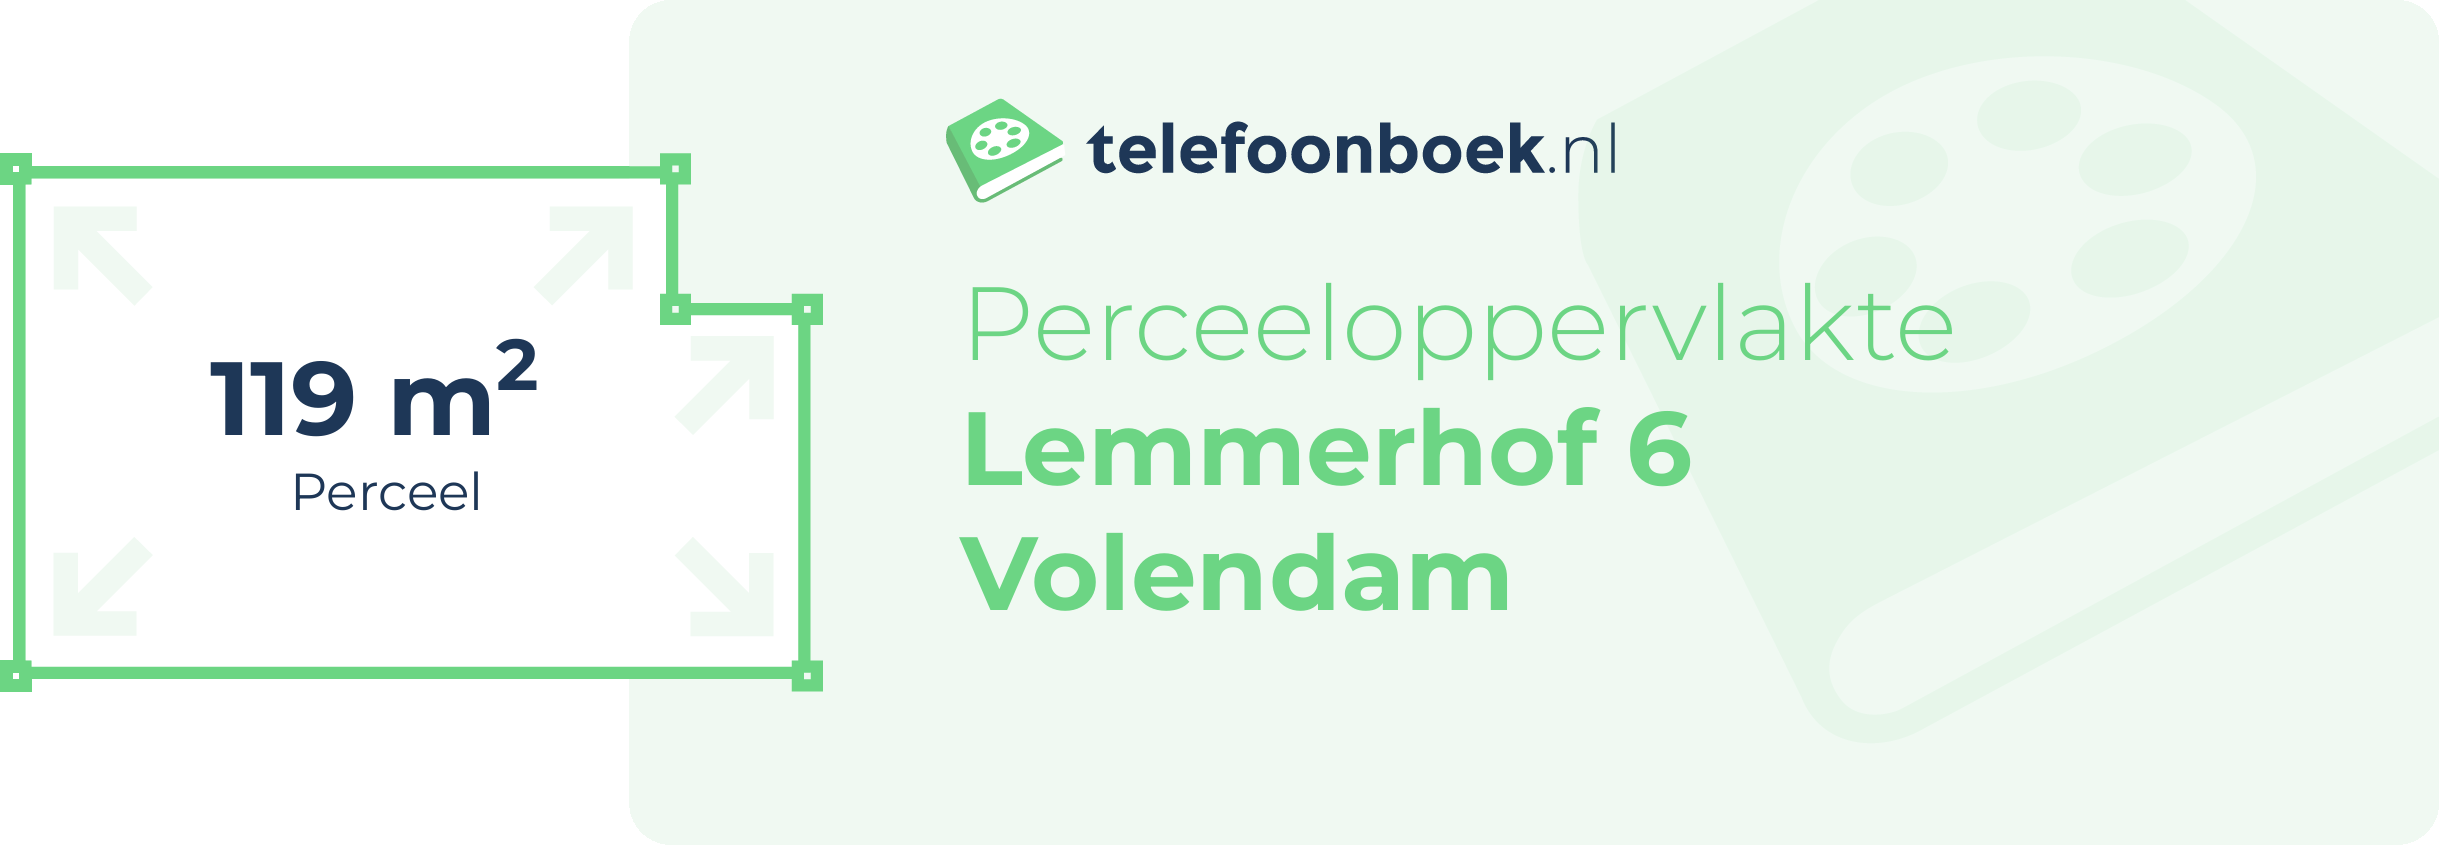 Perceeloppervlakte Lemmerhof 6 Volendam